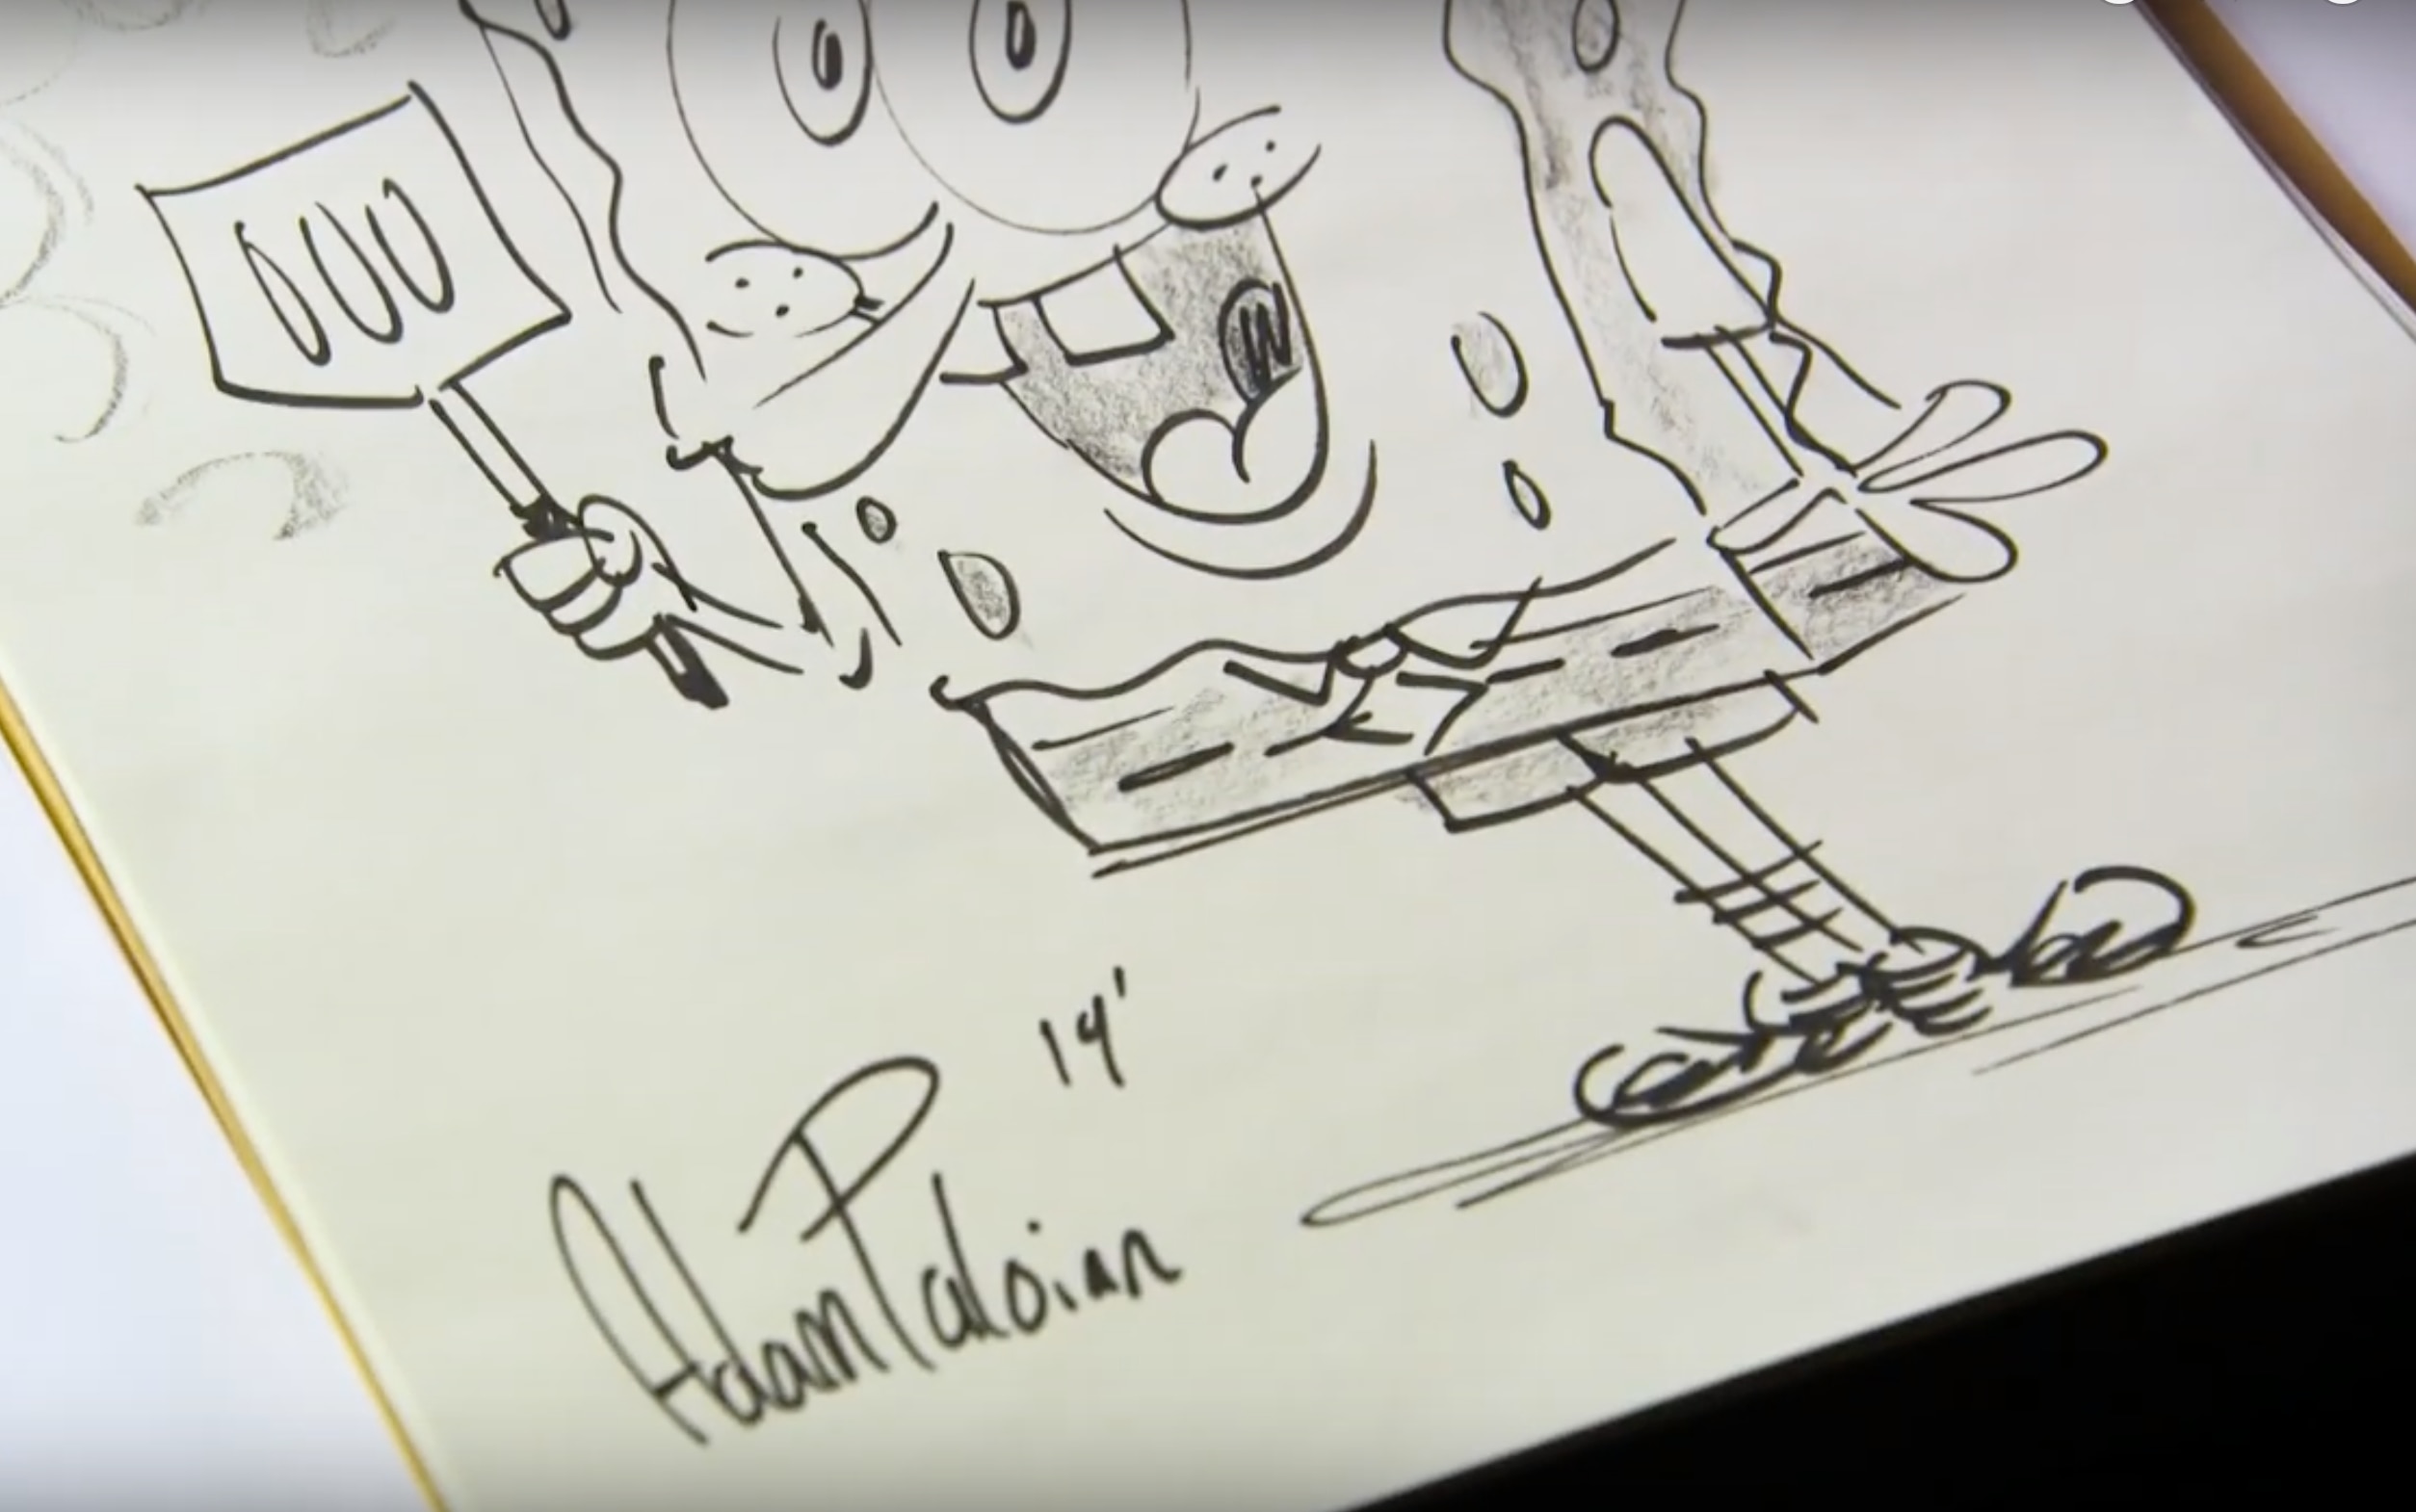 Adam Paloian drawing Spongebob